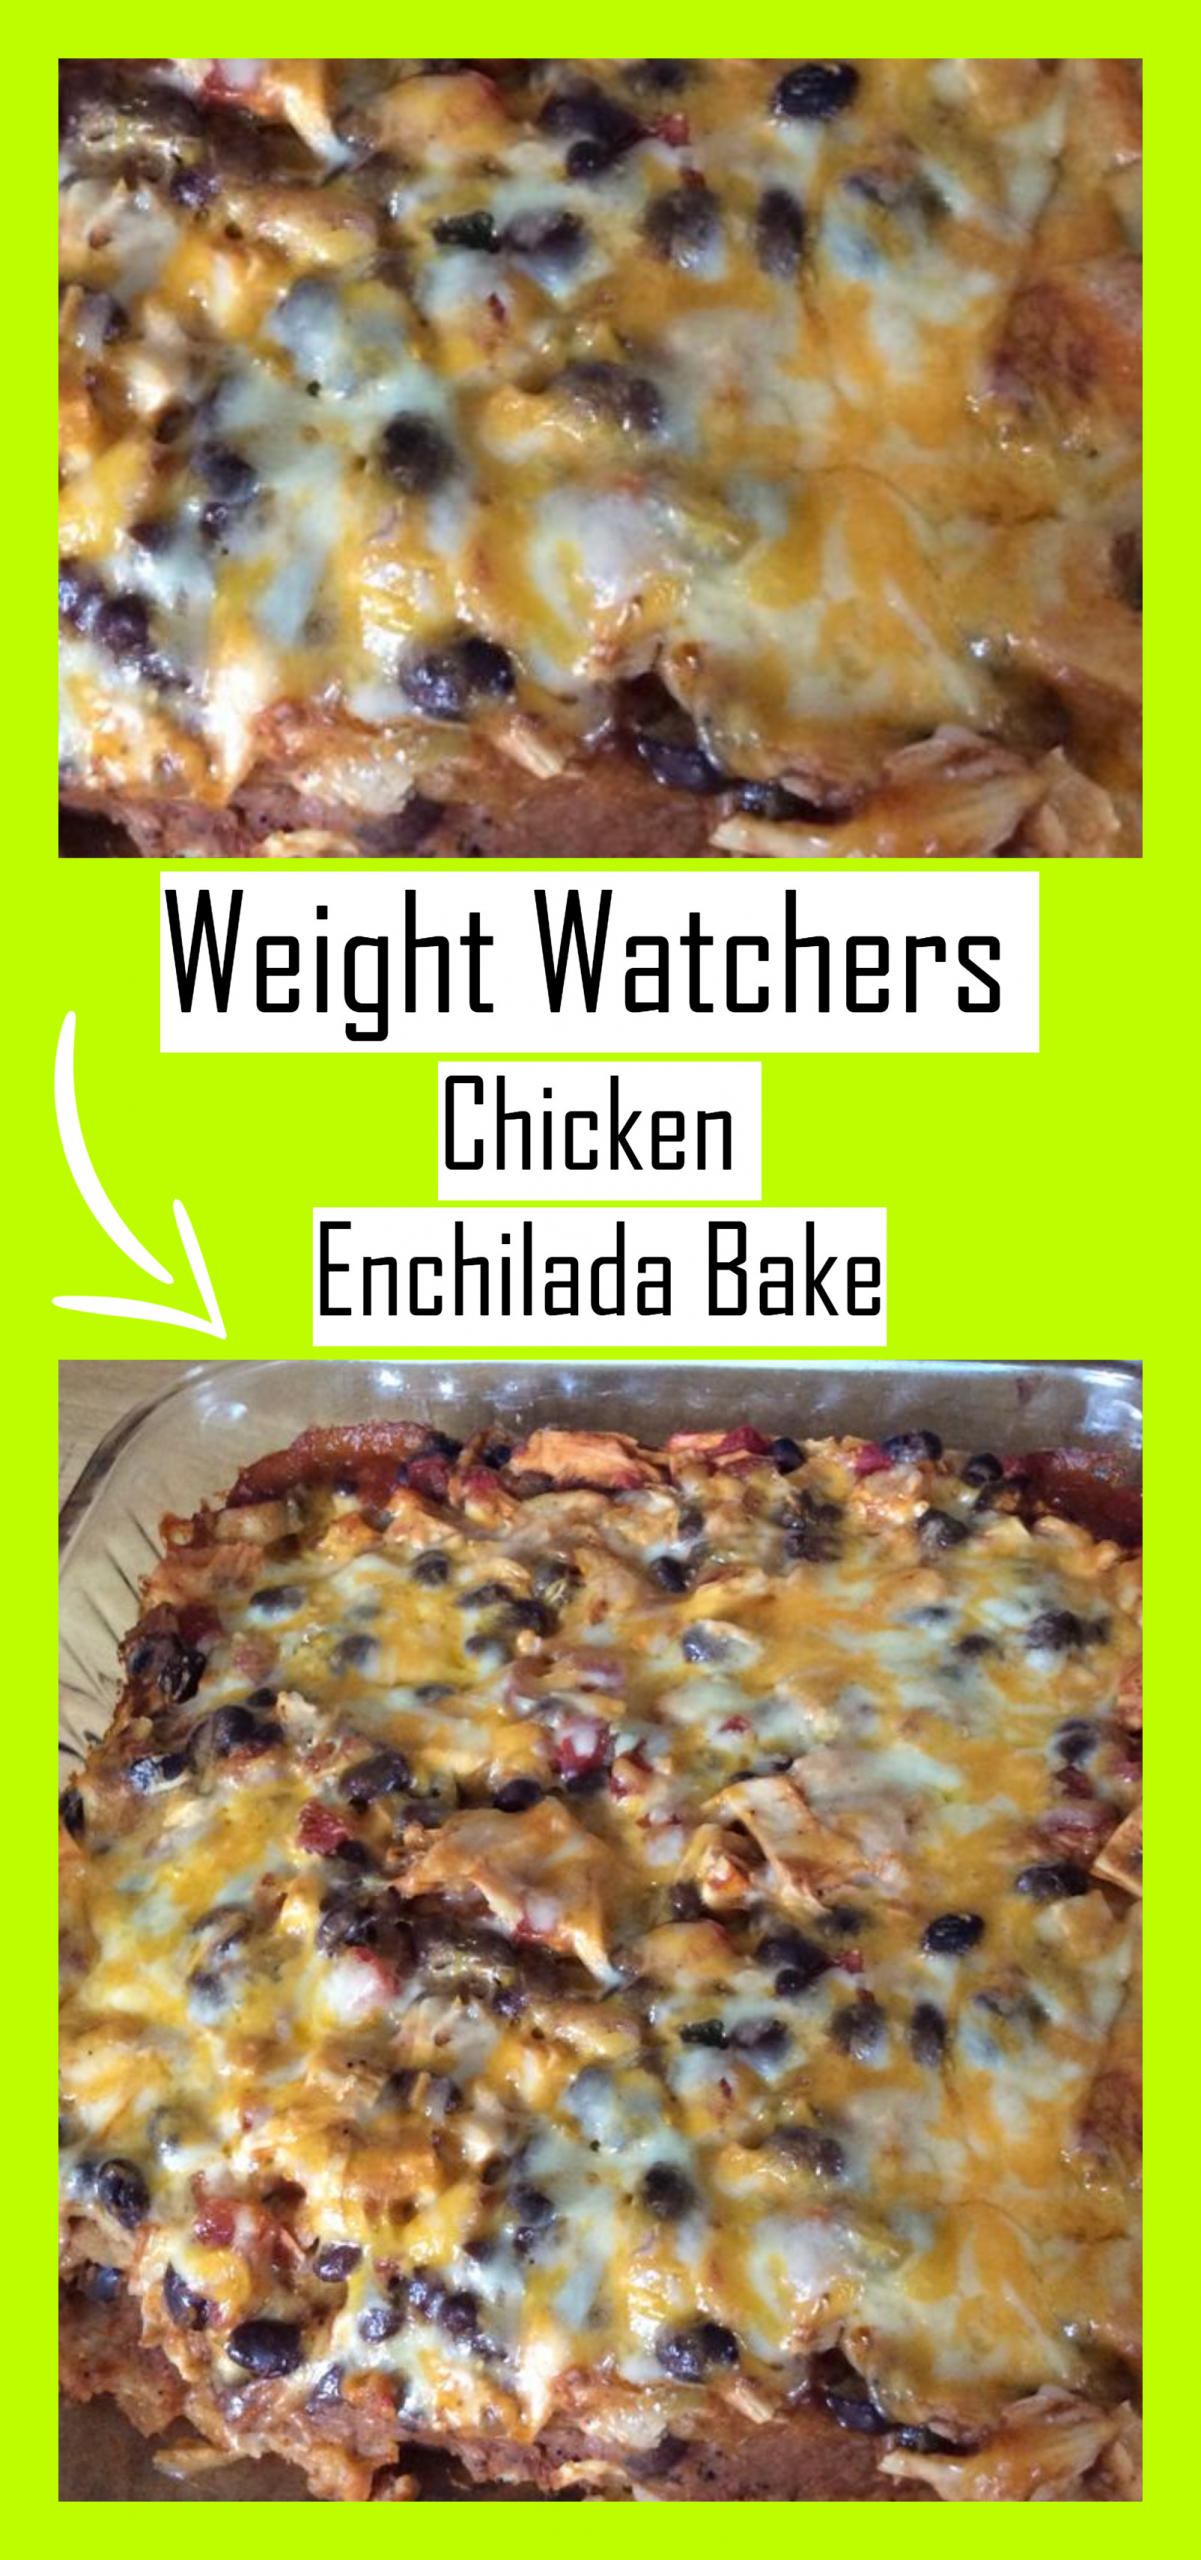 Weight Watchers Enchiladas
 Weight Watchers Chicken Enchilada Bake weight watchers